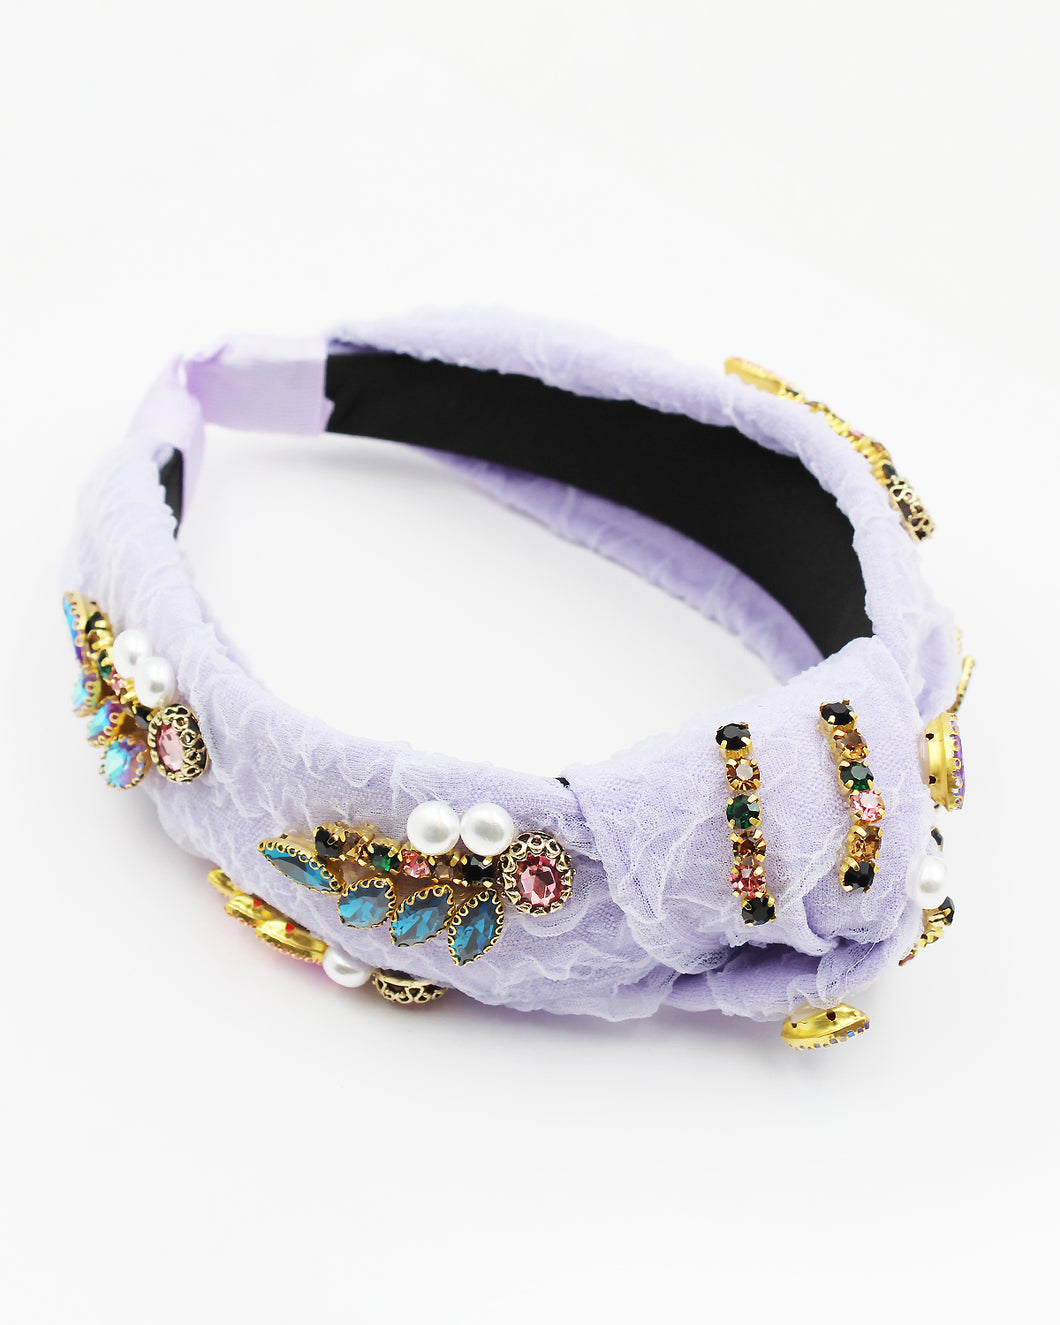 Jeweled Lace Organza Headband